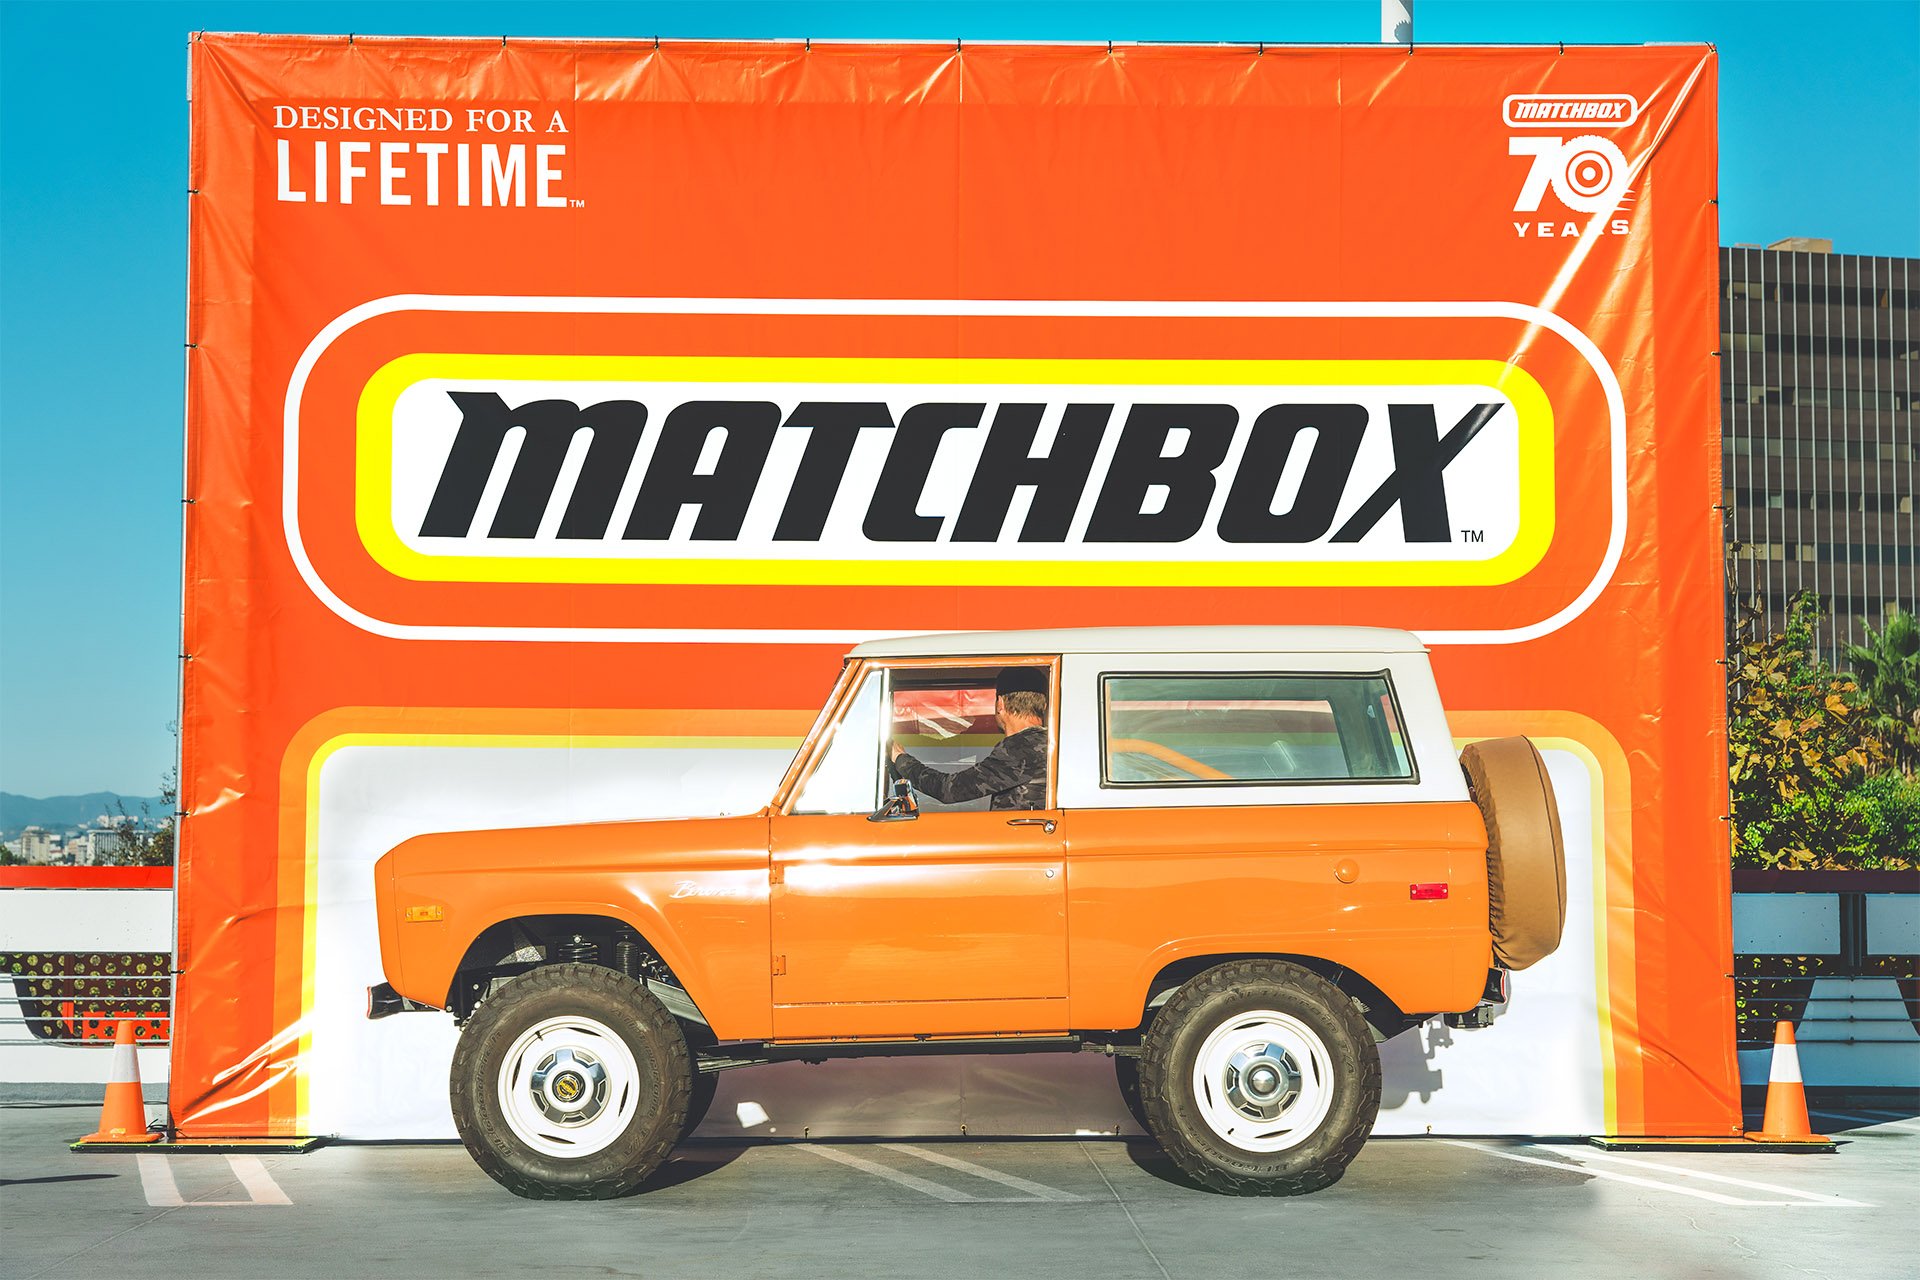 Petersen-Matchbox-Cruise-In-145.jpg